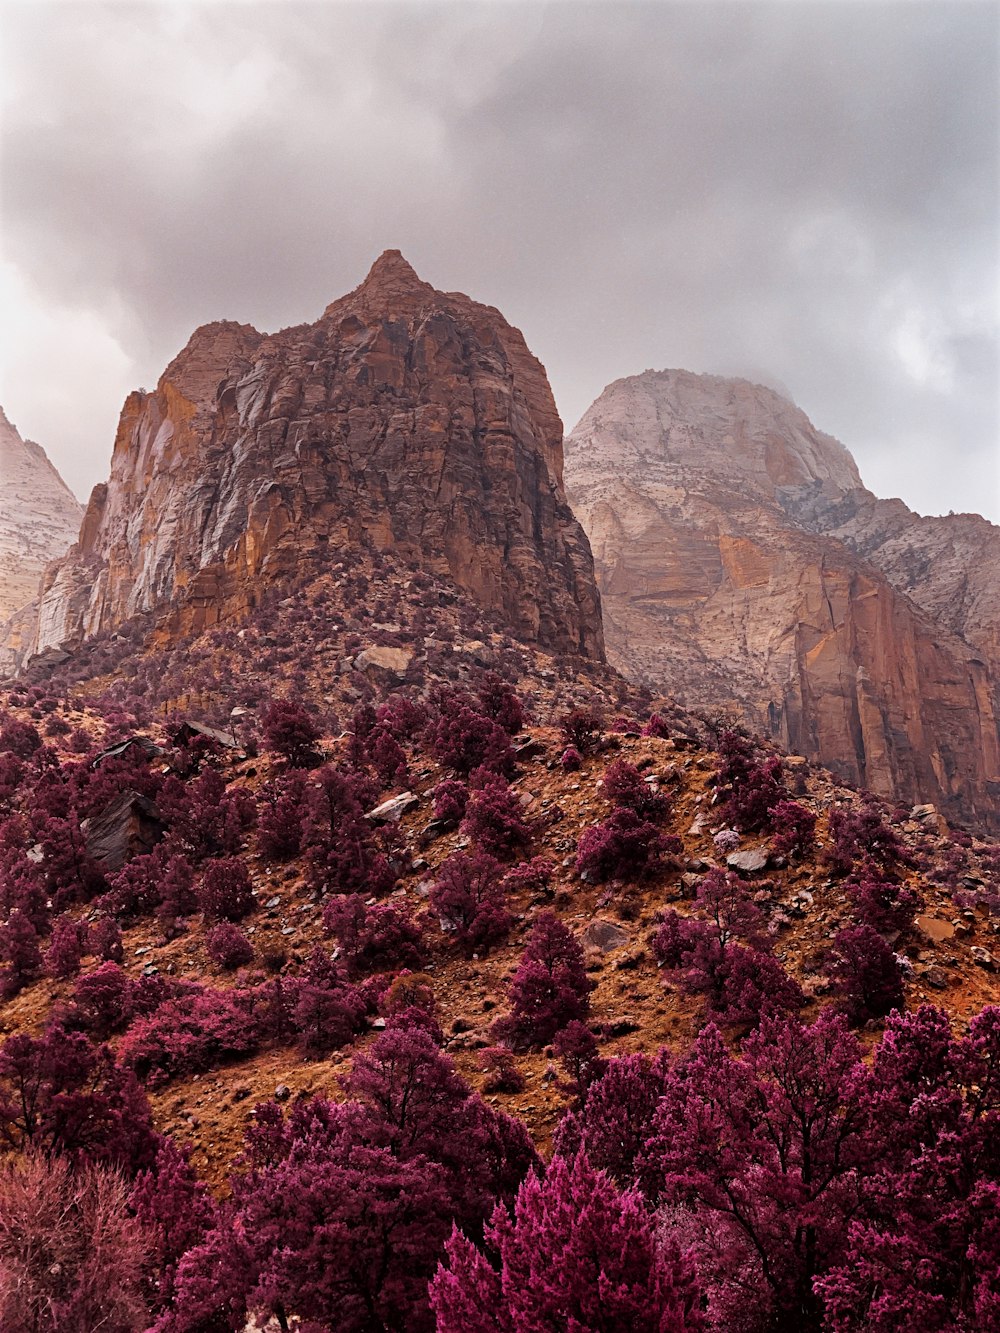 Campo de flores púrpuras y marrones cerca de la montaña rocosa marrón bajo el cielo nublado blanco durante el día